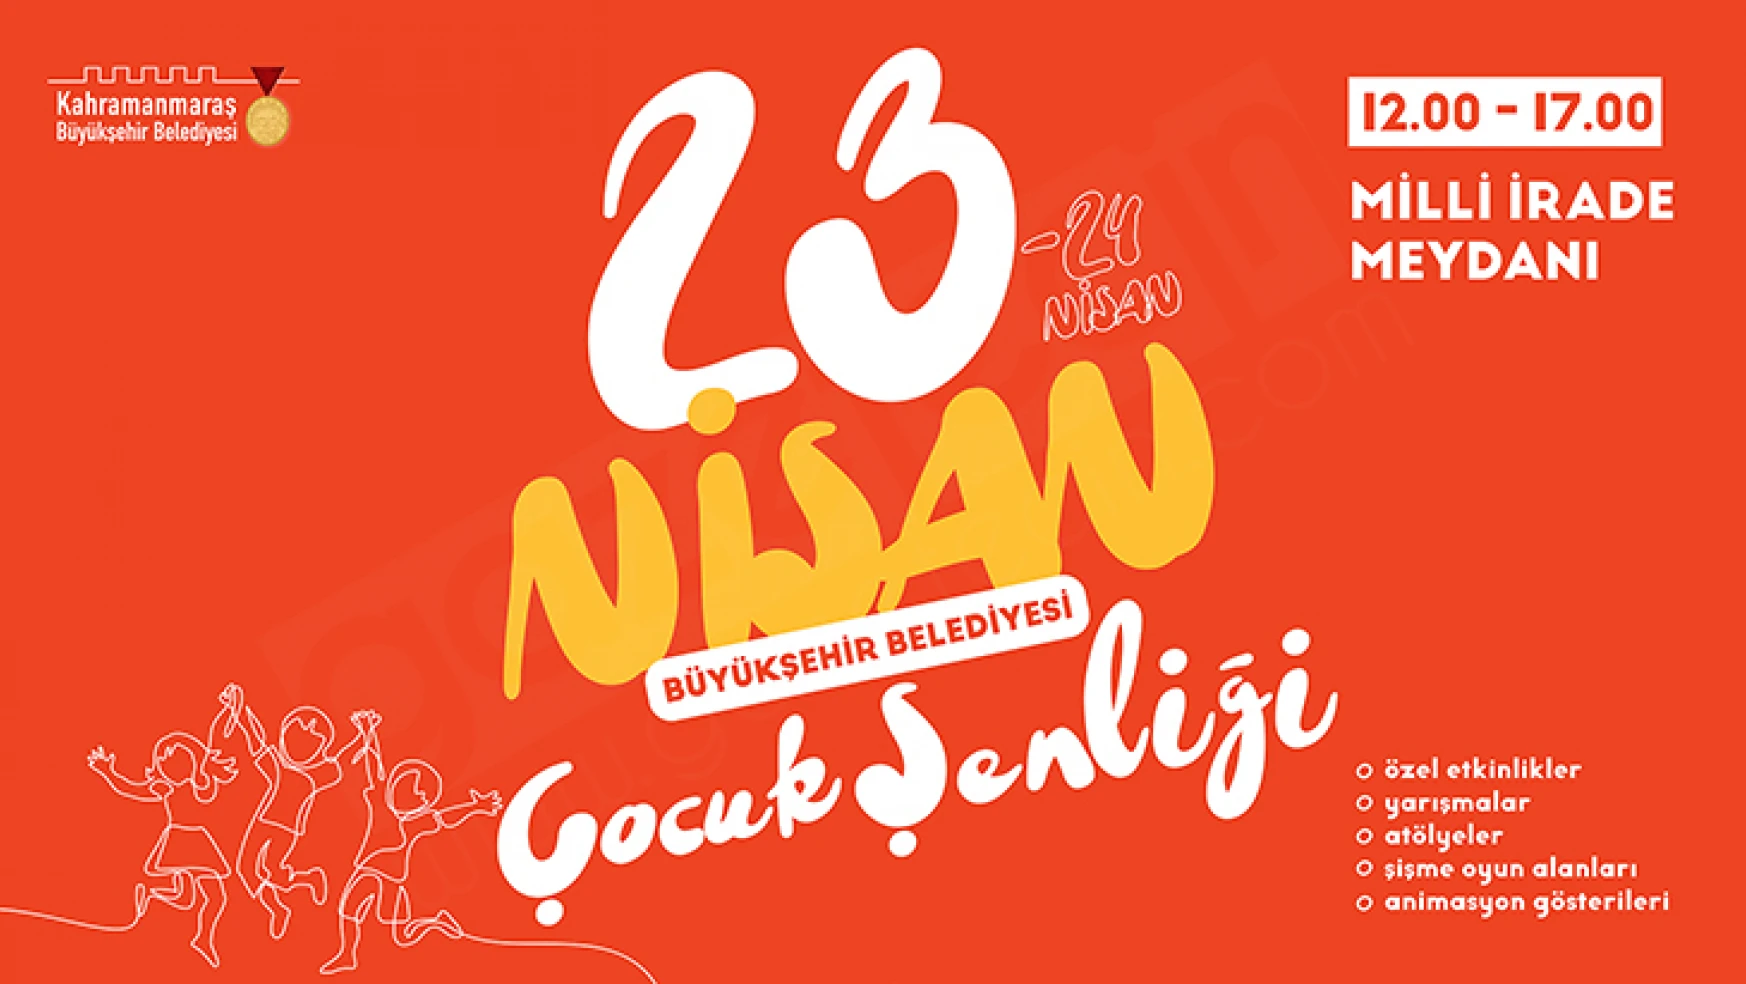 Kahramanmaraş'ta 23 Nisan'da 'Çocuk Şenliği' düzenlenecek